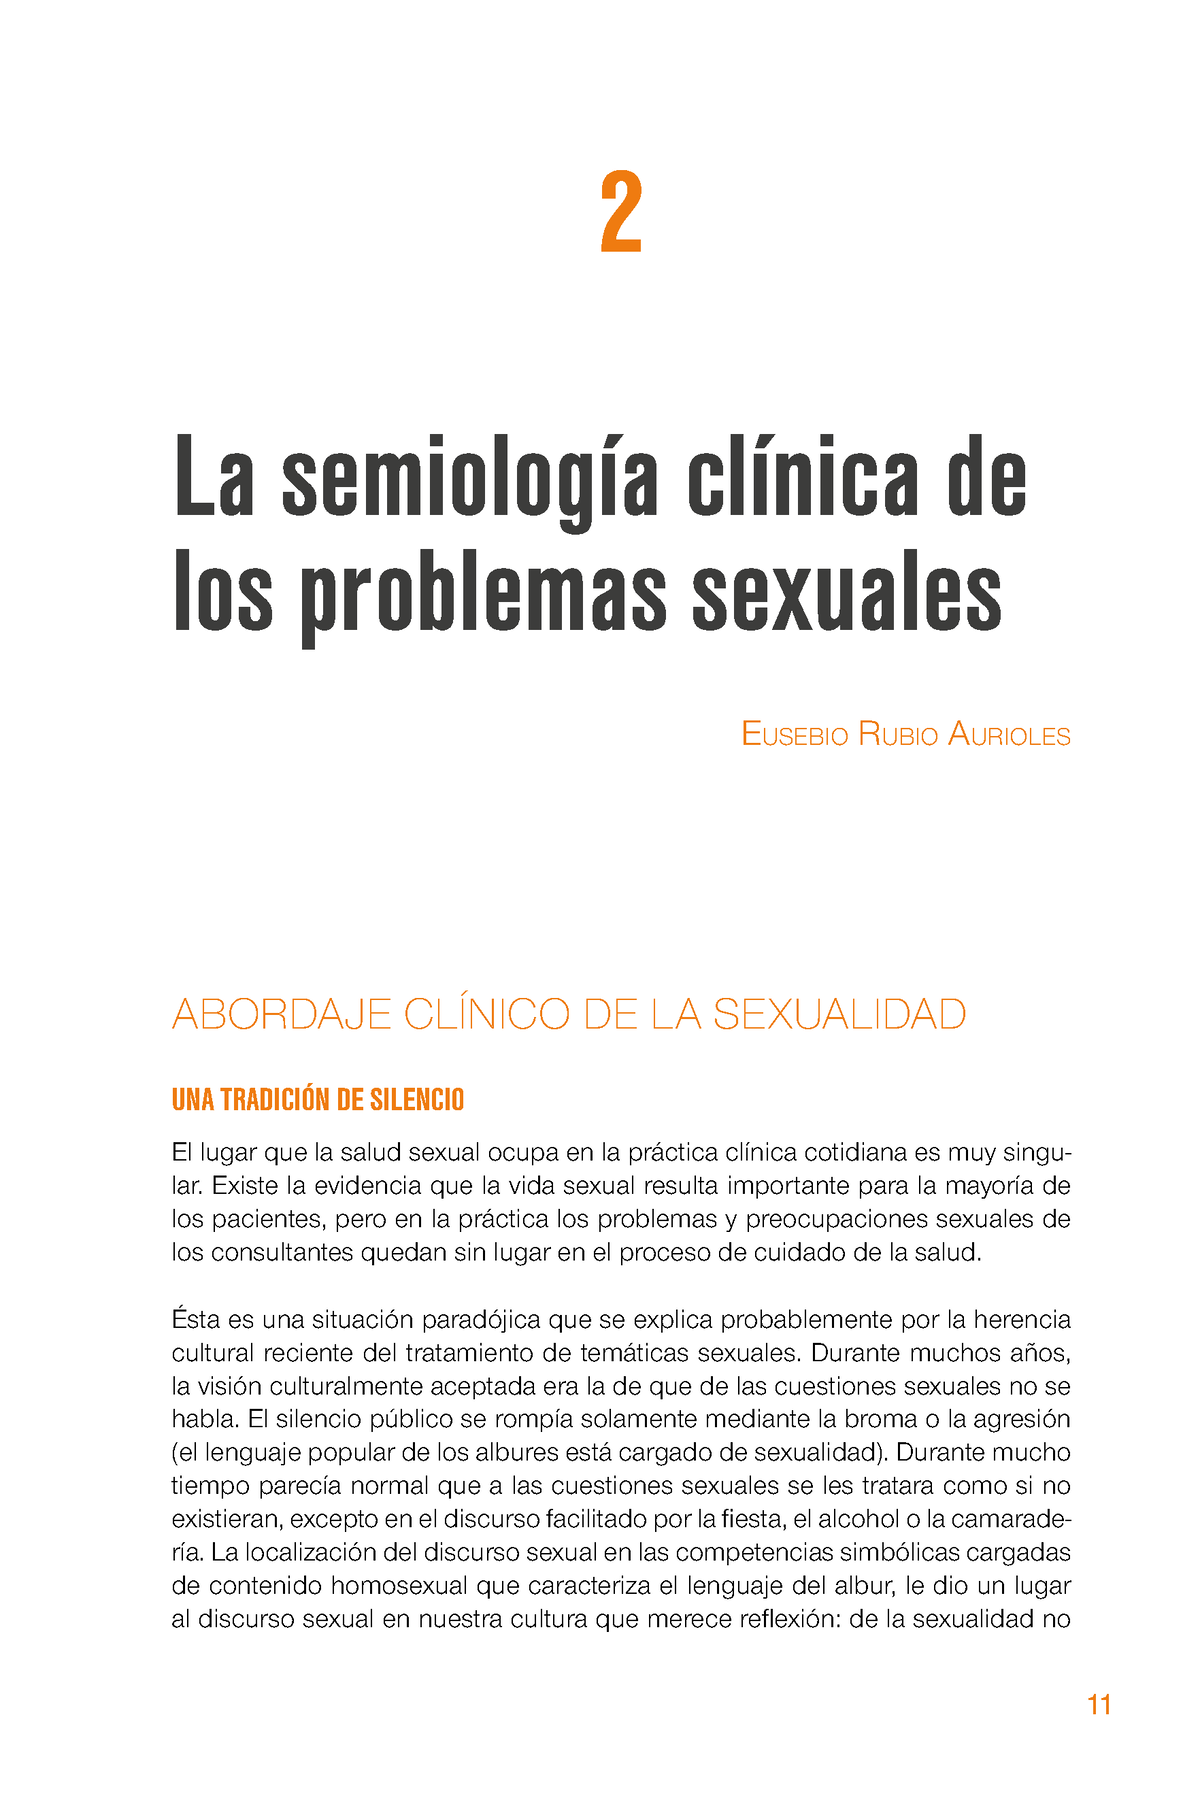 Libro Sex 1 299 Páginas 22 3436 91 La Semiología Clínica De Los Problemas Sexuales Eusebio 2520